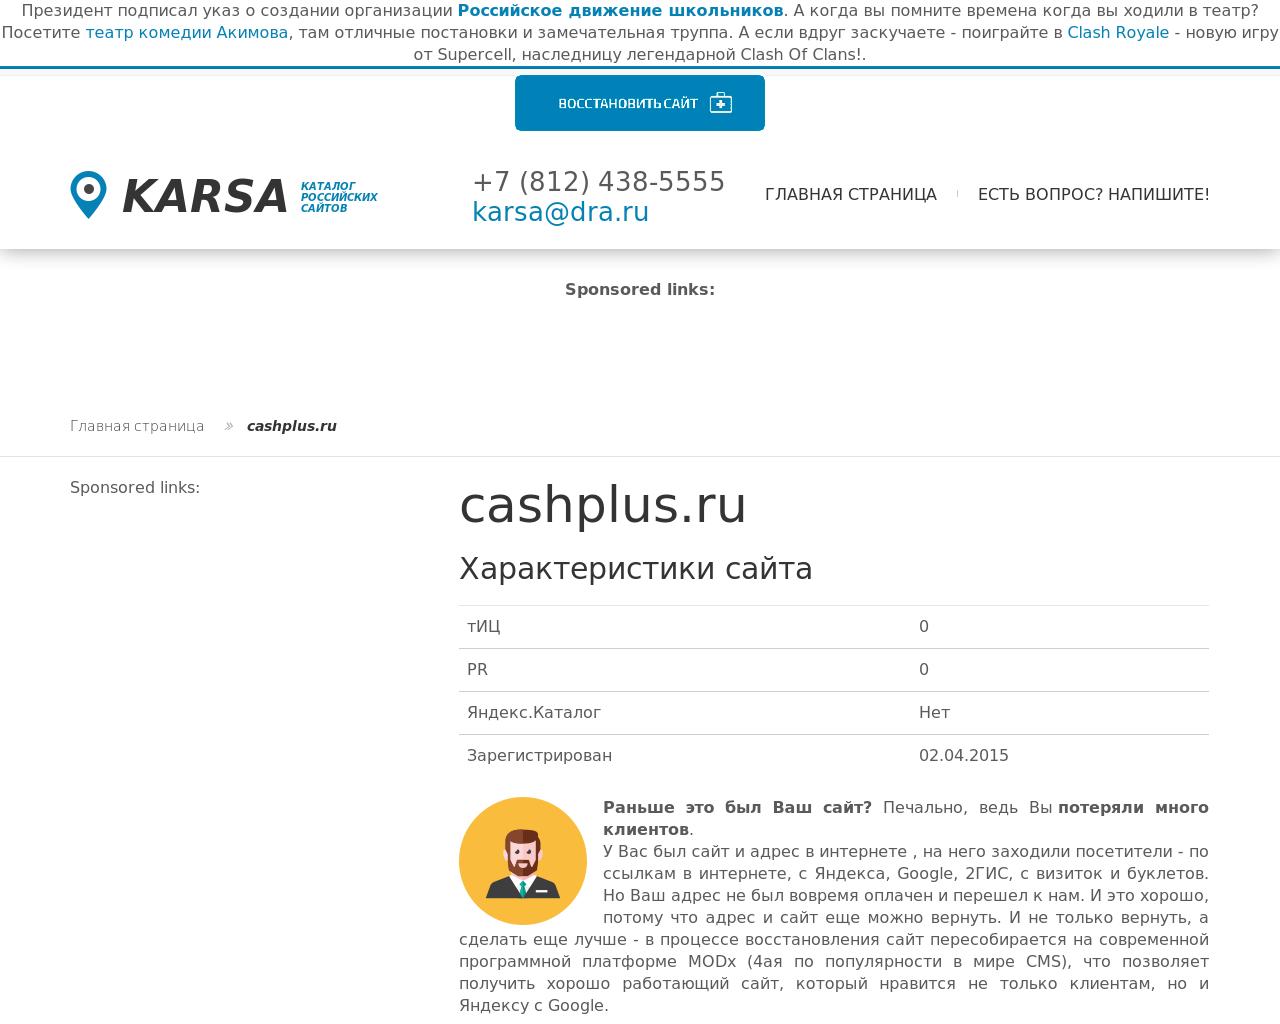 Изображение сайта cashplus.ru в разрешении 1280x1024